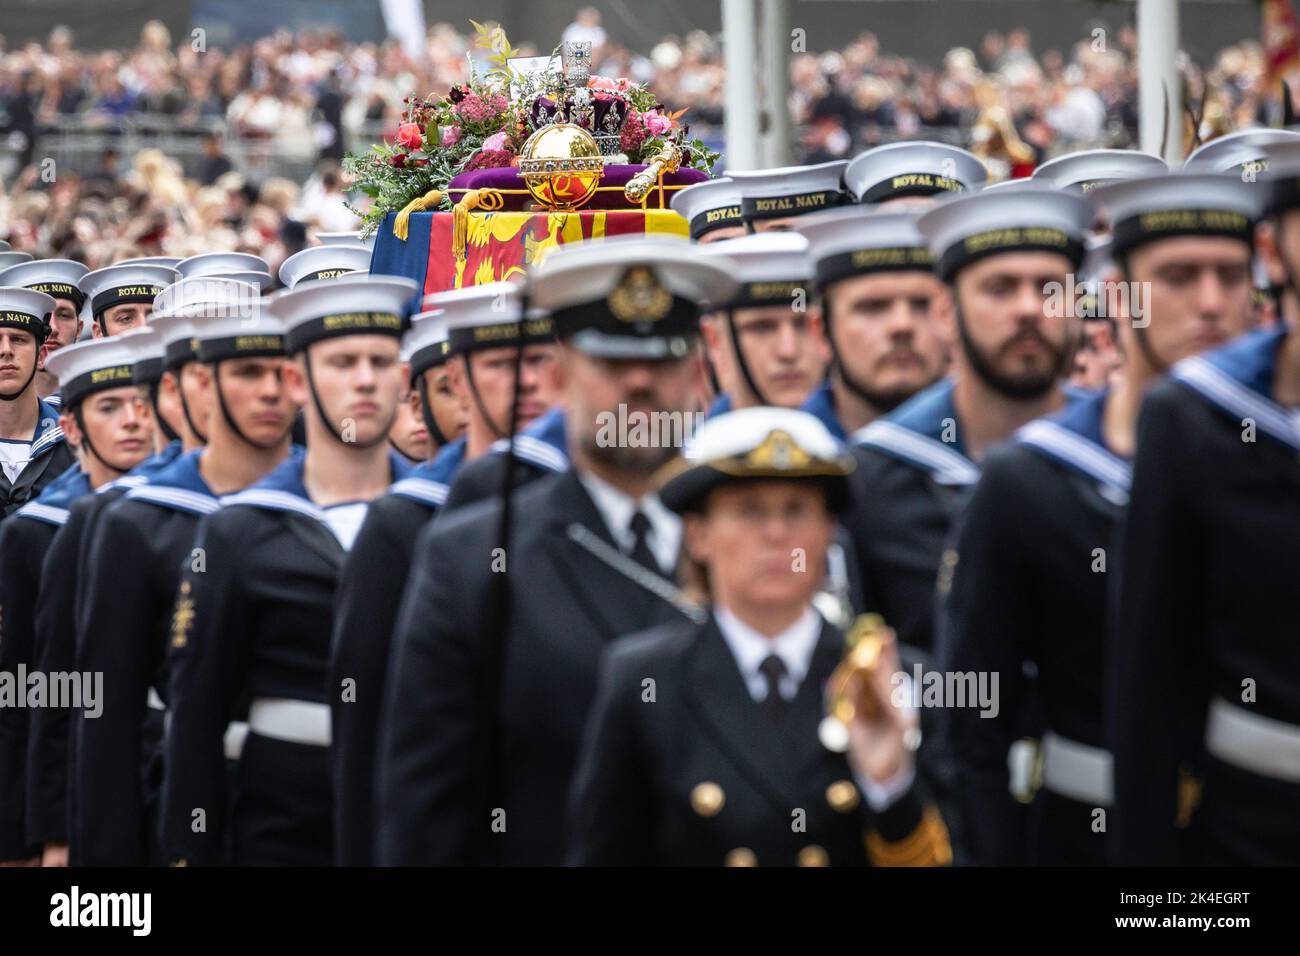 Der Sarg von Königin Elizabeth II. Wird in ihrer Trauerprozession durch London getragen, 22. September 2022, England, Vereinigtes Königreich Stockfoto